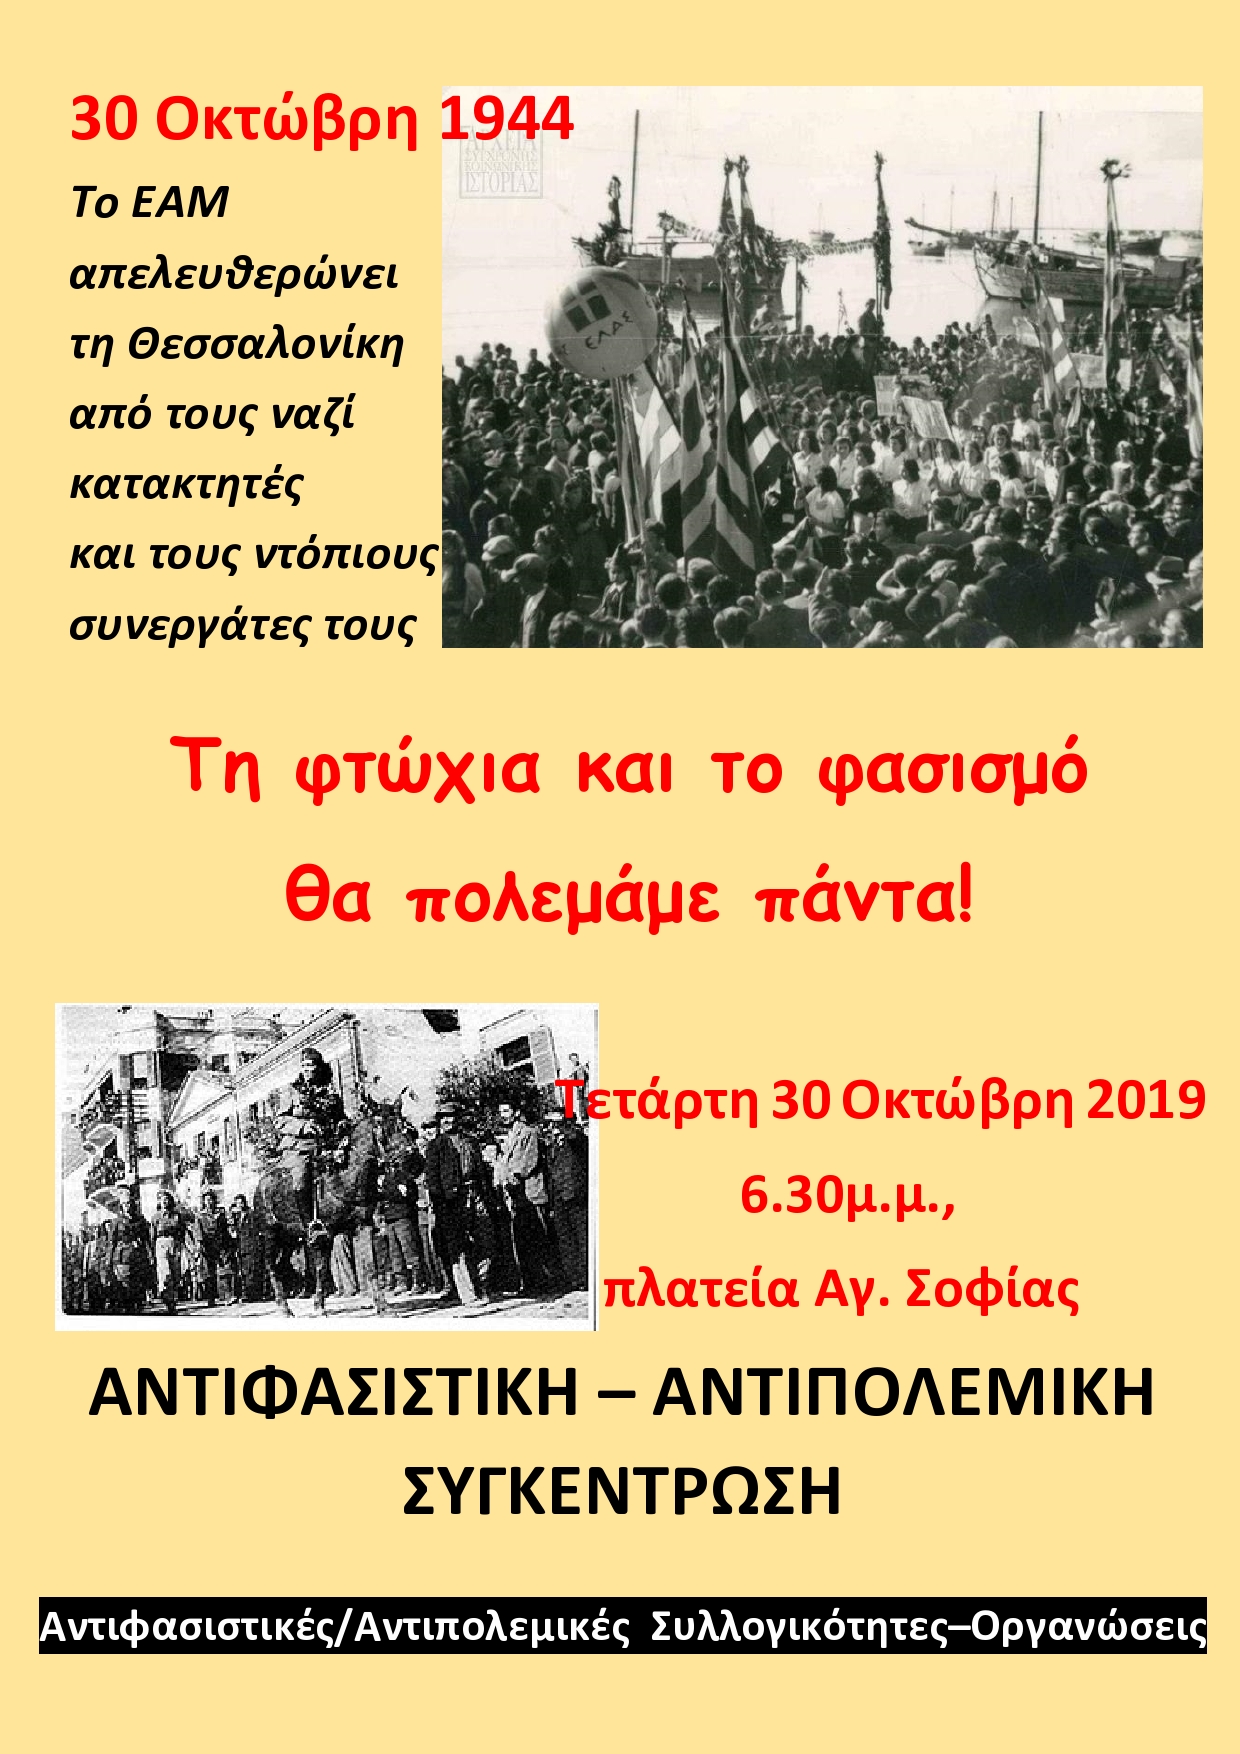 Αντιφασιστικό – αντιπολεμικό Συλλαλητήριο για την απελευθέρωση της Θεσσαλονίκης από τη ναζιστική κατοχή